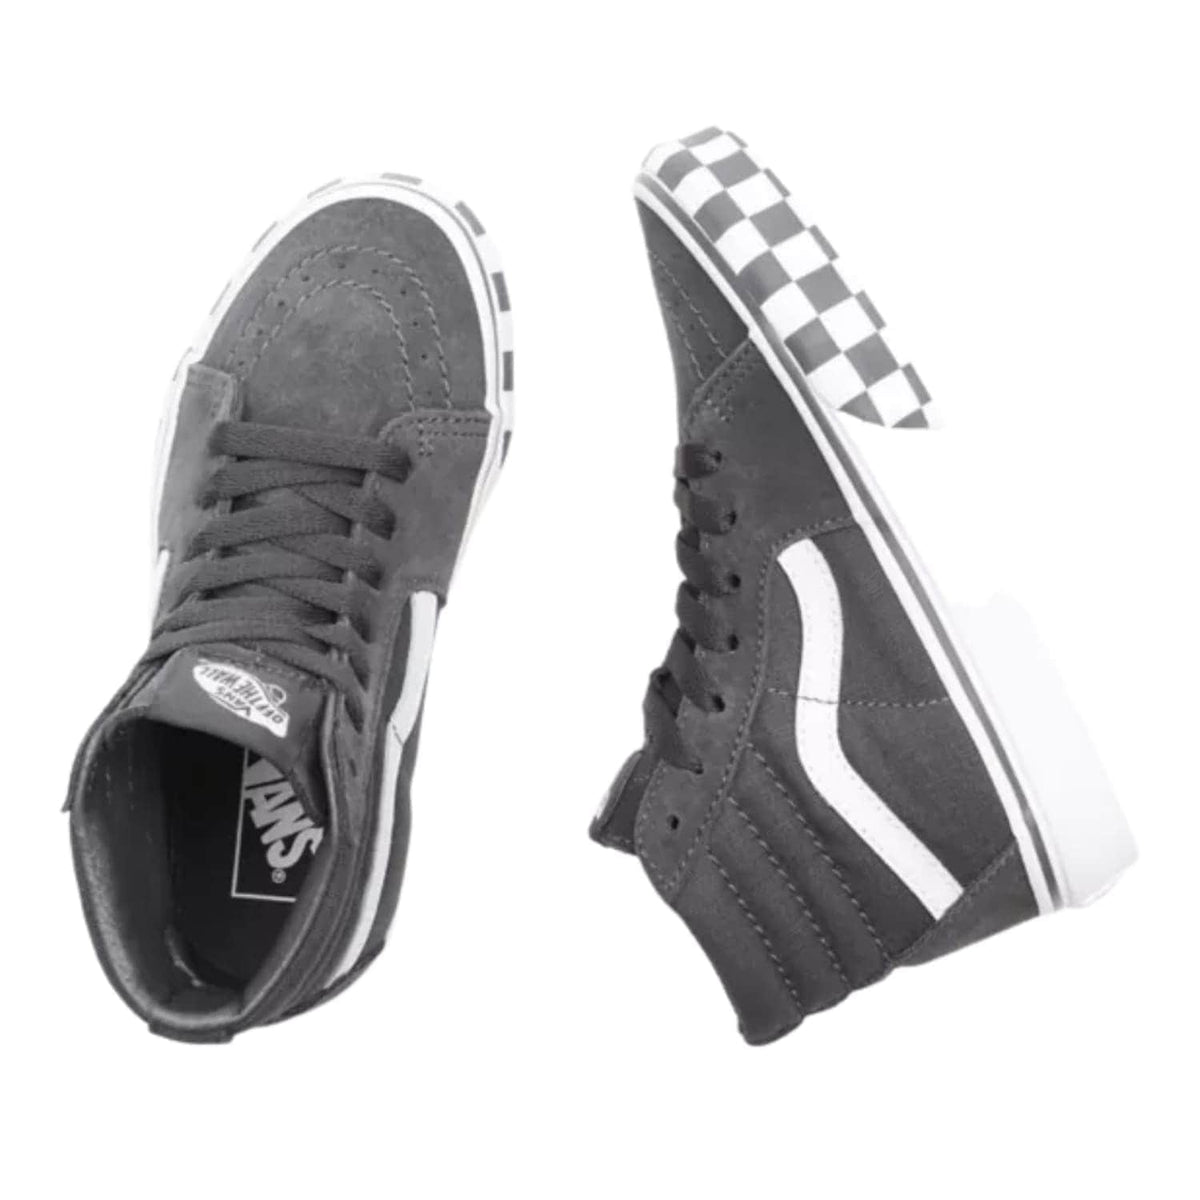 Vans Kids Sk8-Hi Skate Shoes (Check Bumper) - Asphalt/True White - Boys Skate Shoes by Vans